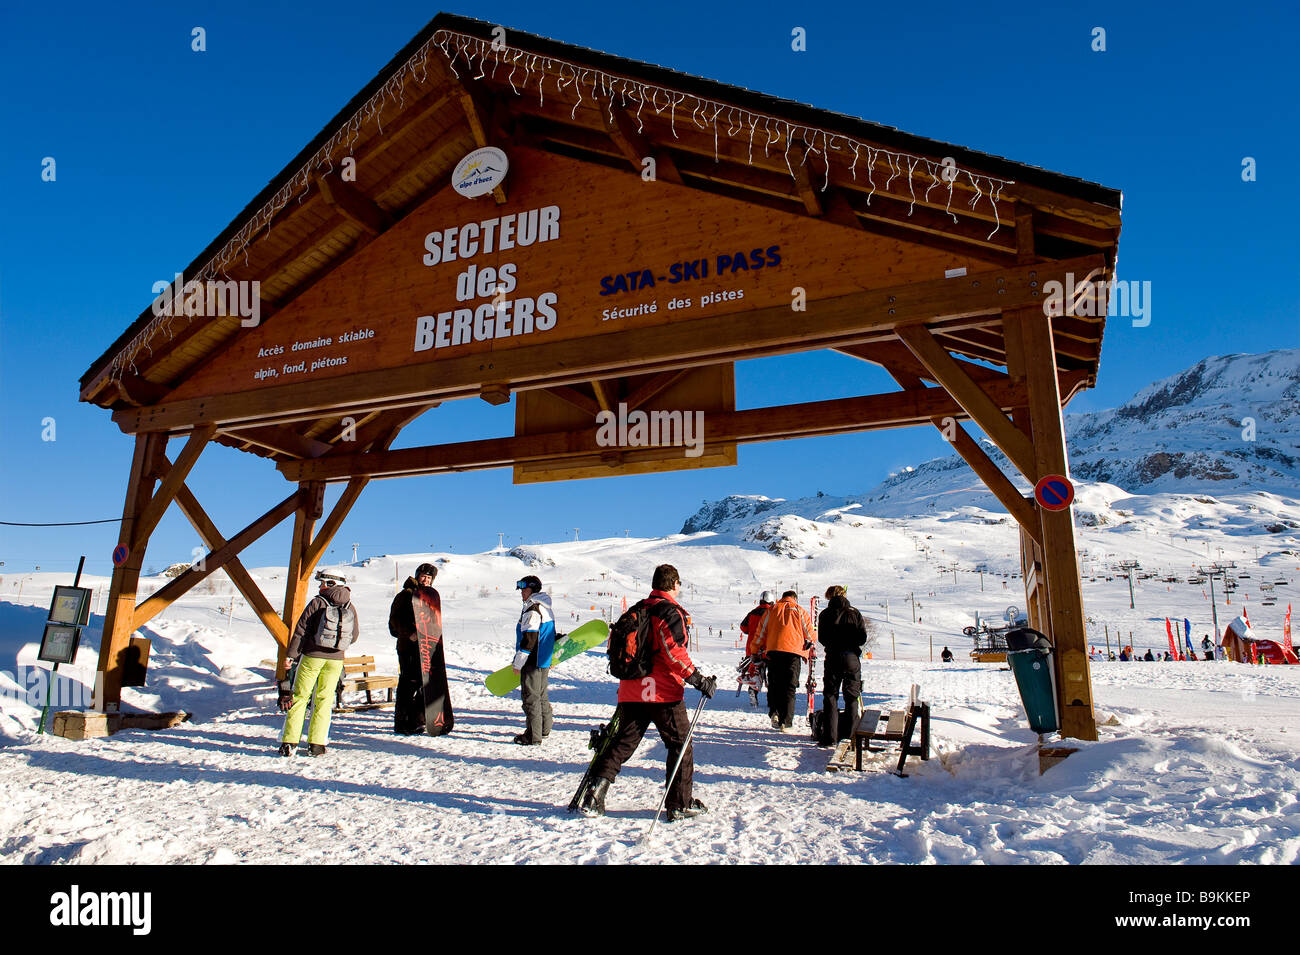 France, Isere, L'Alpe d'Huez, ski resort, Secteur des Bergers (Sheperds  area Stock Photo - Alamy